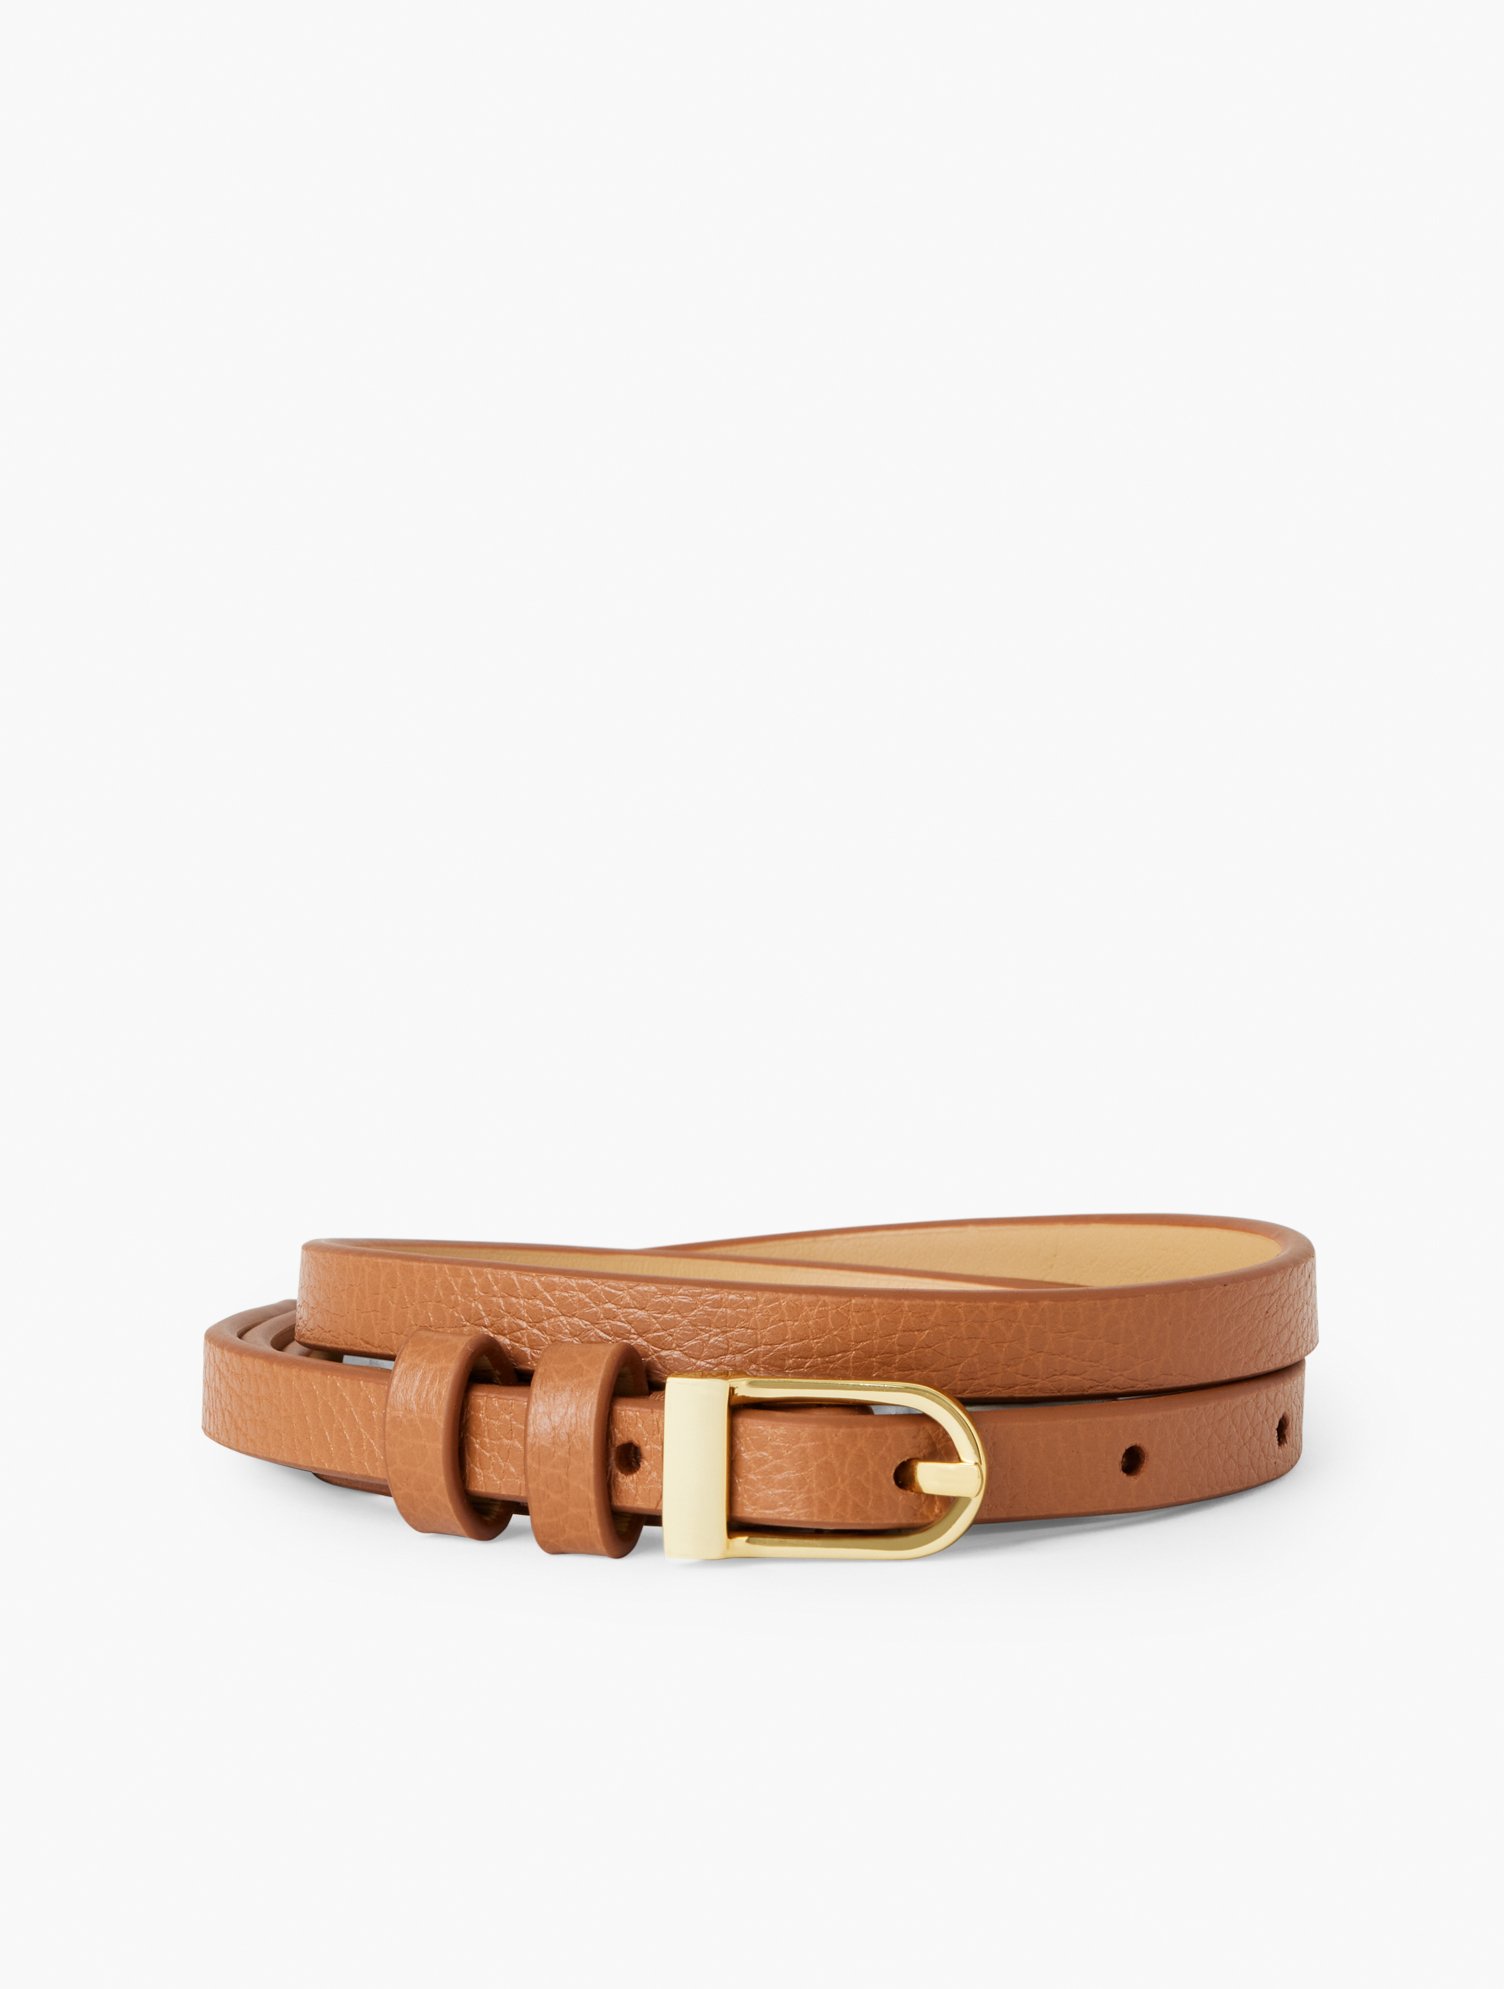 Talbots Slim Leather Belt - Havana Tan - Large